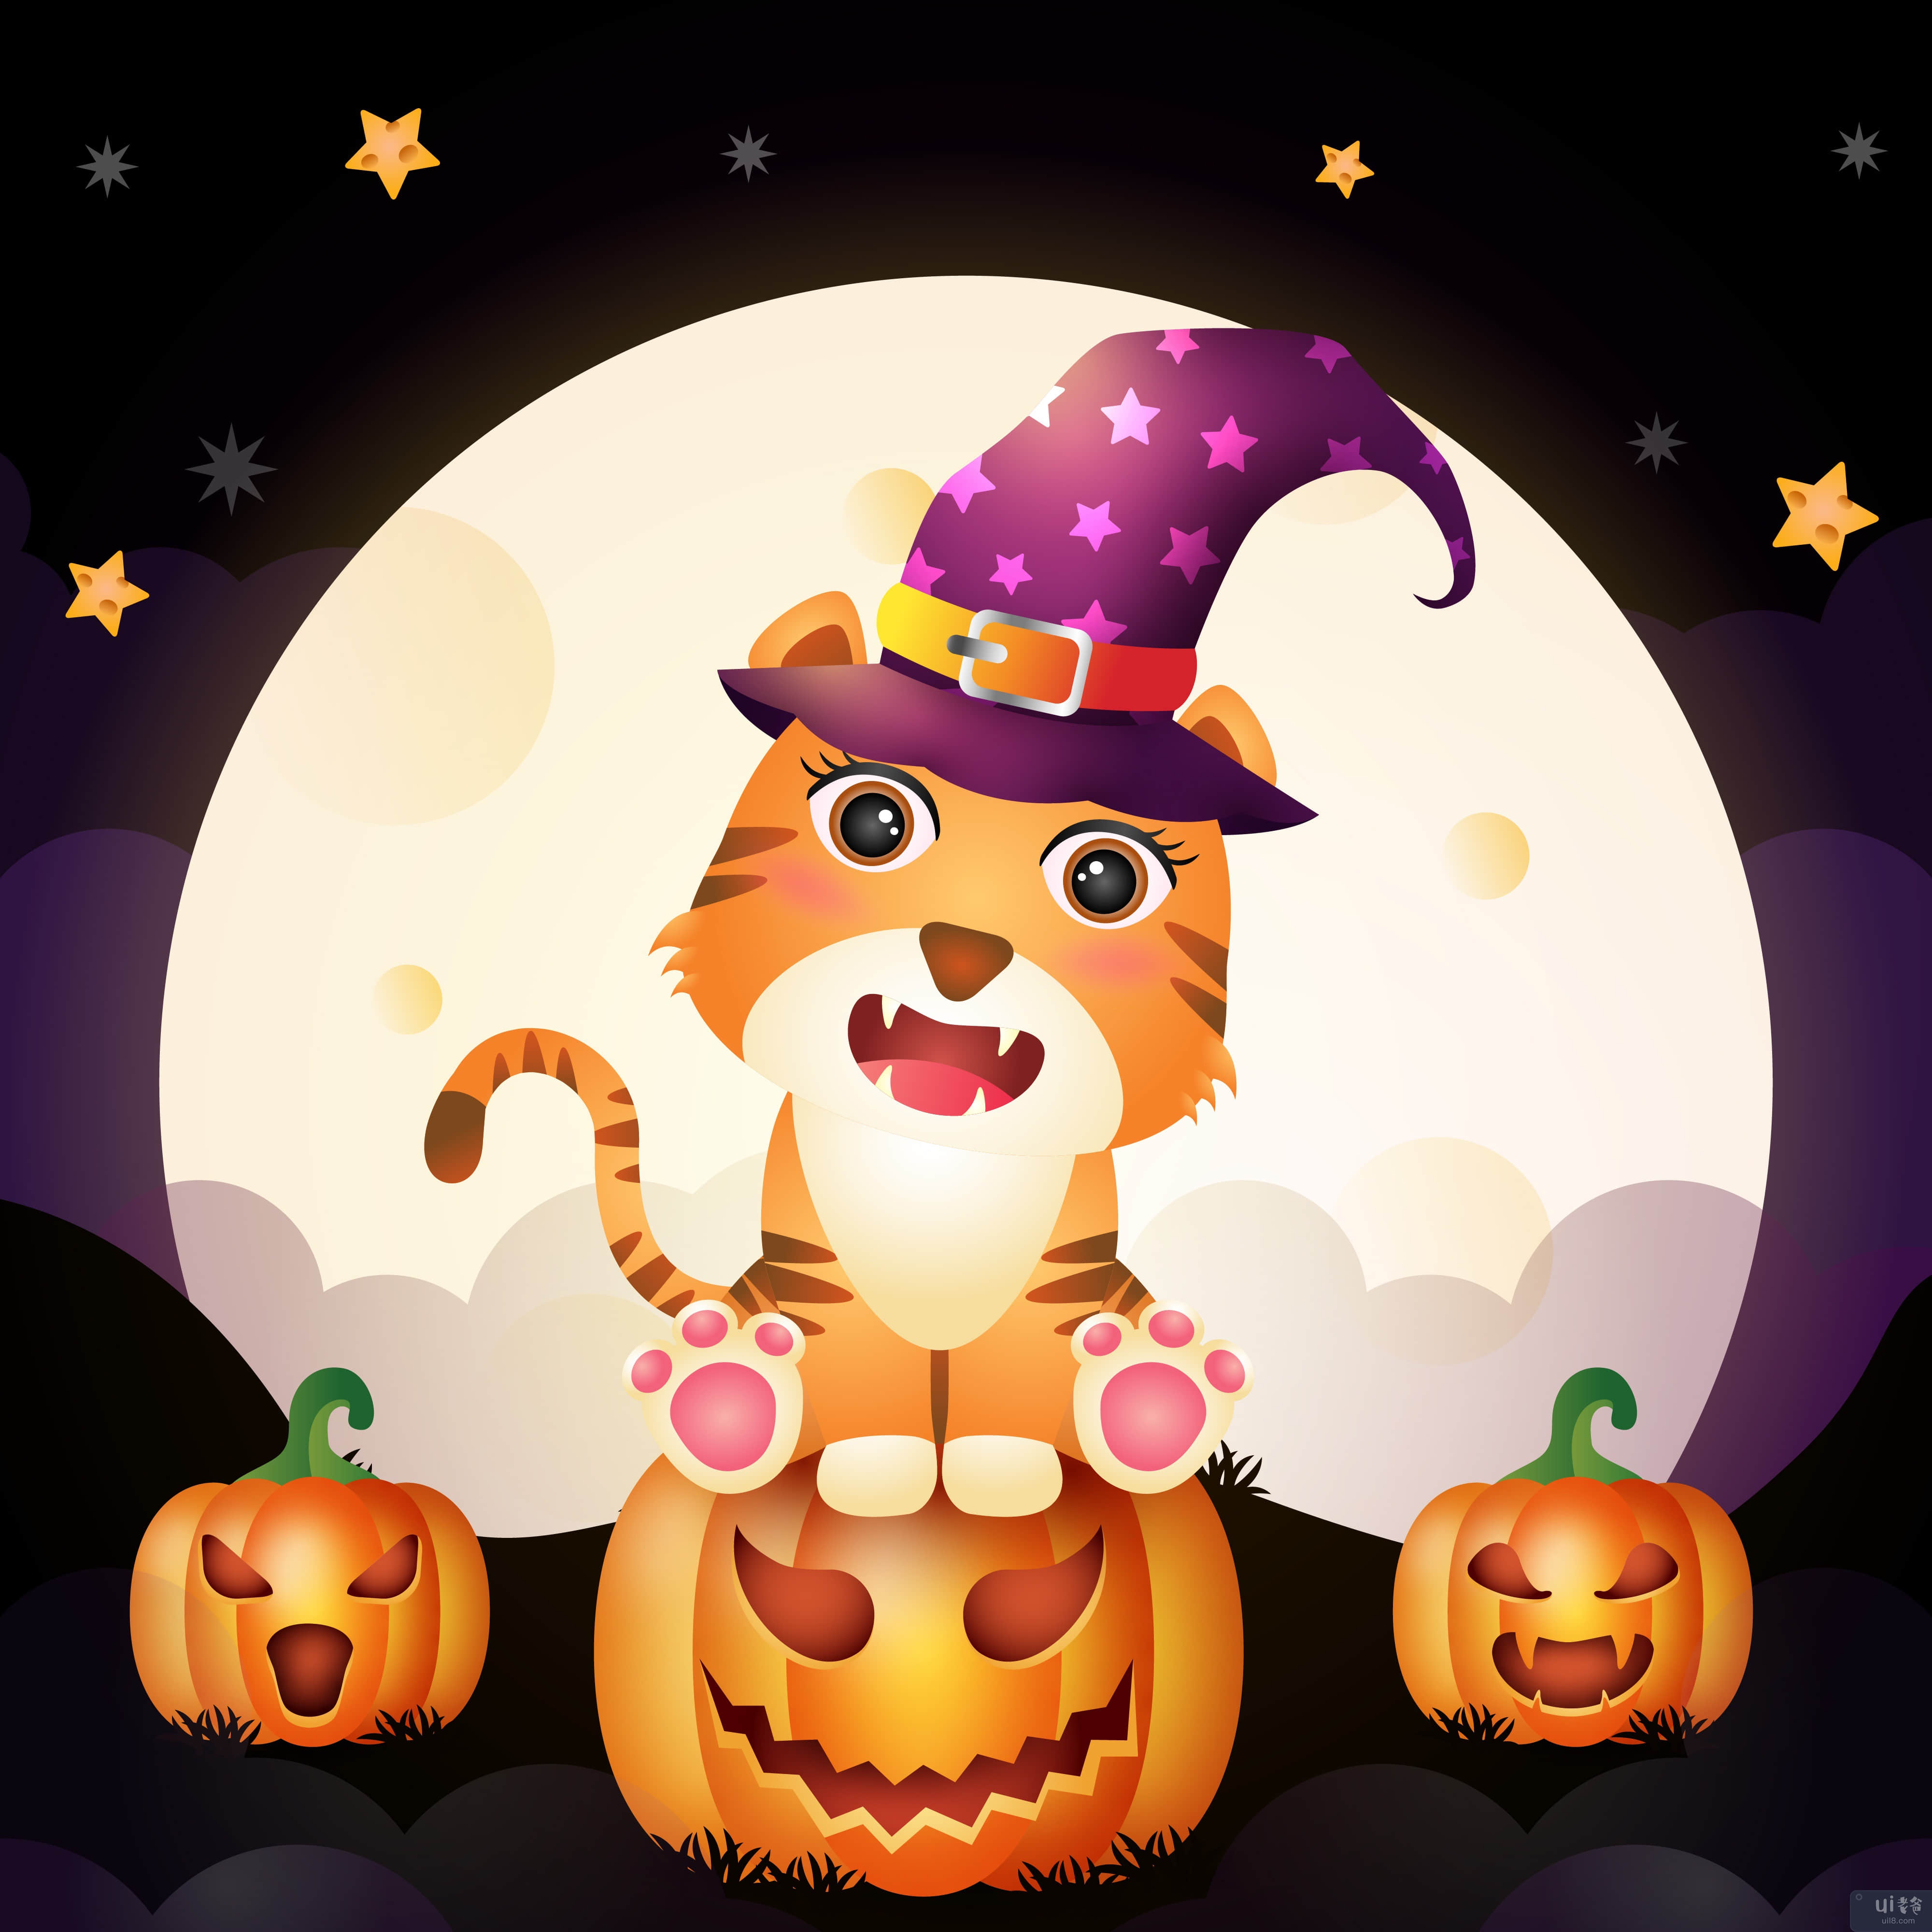 一个可爱的卡通万圣节女巫老虎的插图(Illustration of a cute cartoon halloween witch tiger)插图